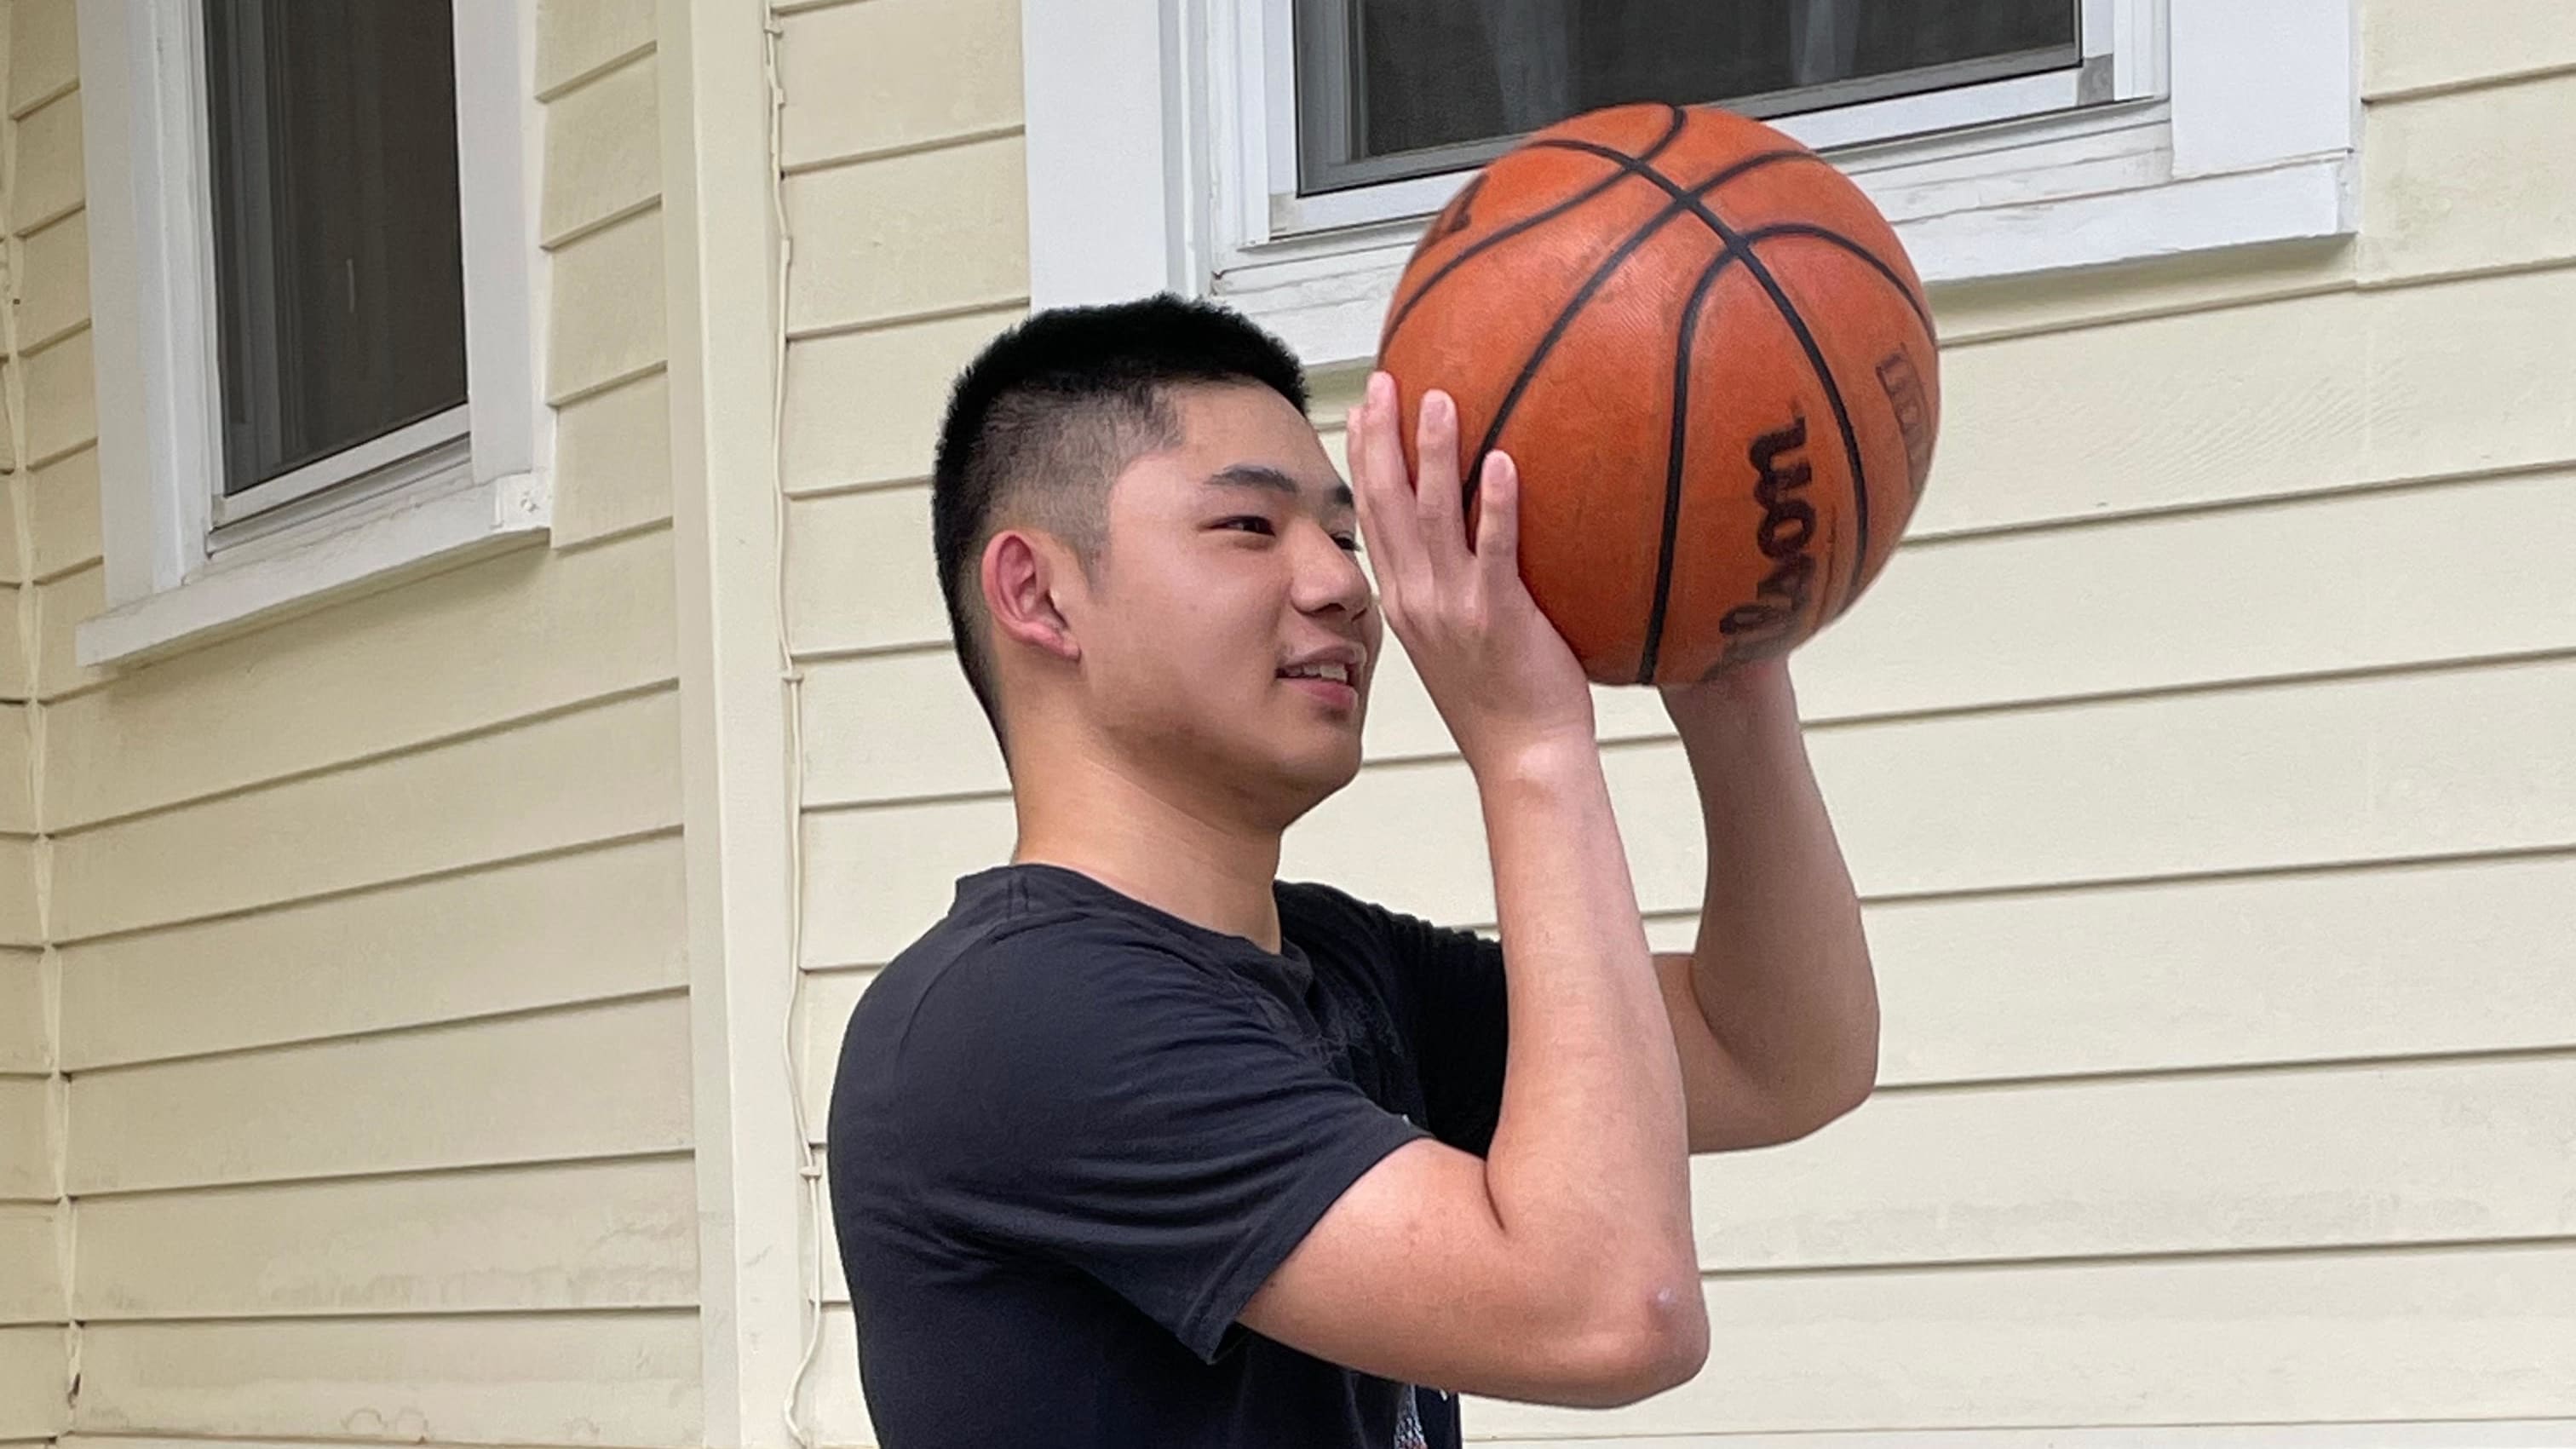 Brandon Shintani playing basketball.